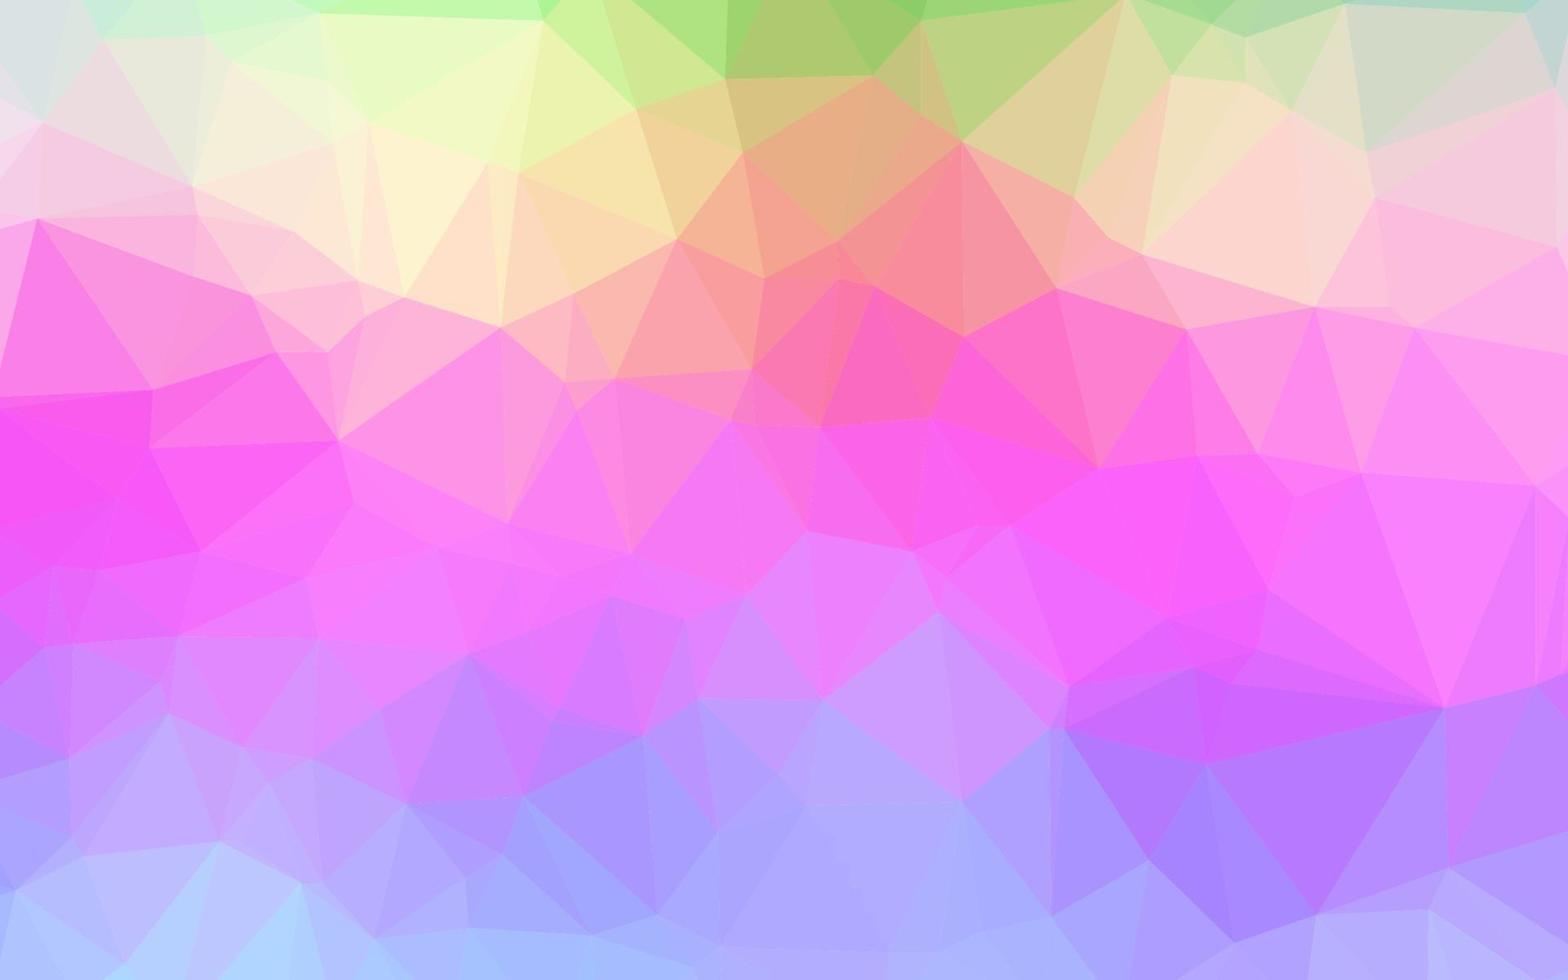 licht veelkleurig, regenboog vector abstracte veelhoekige dekking.